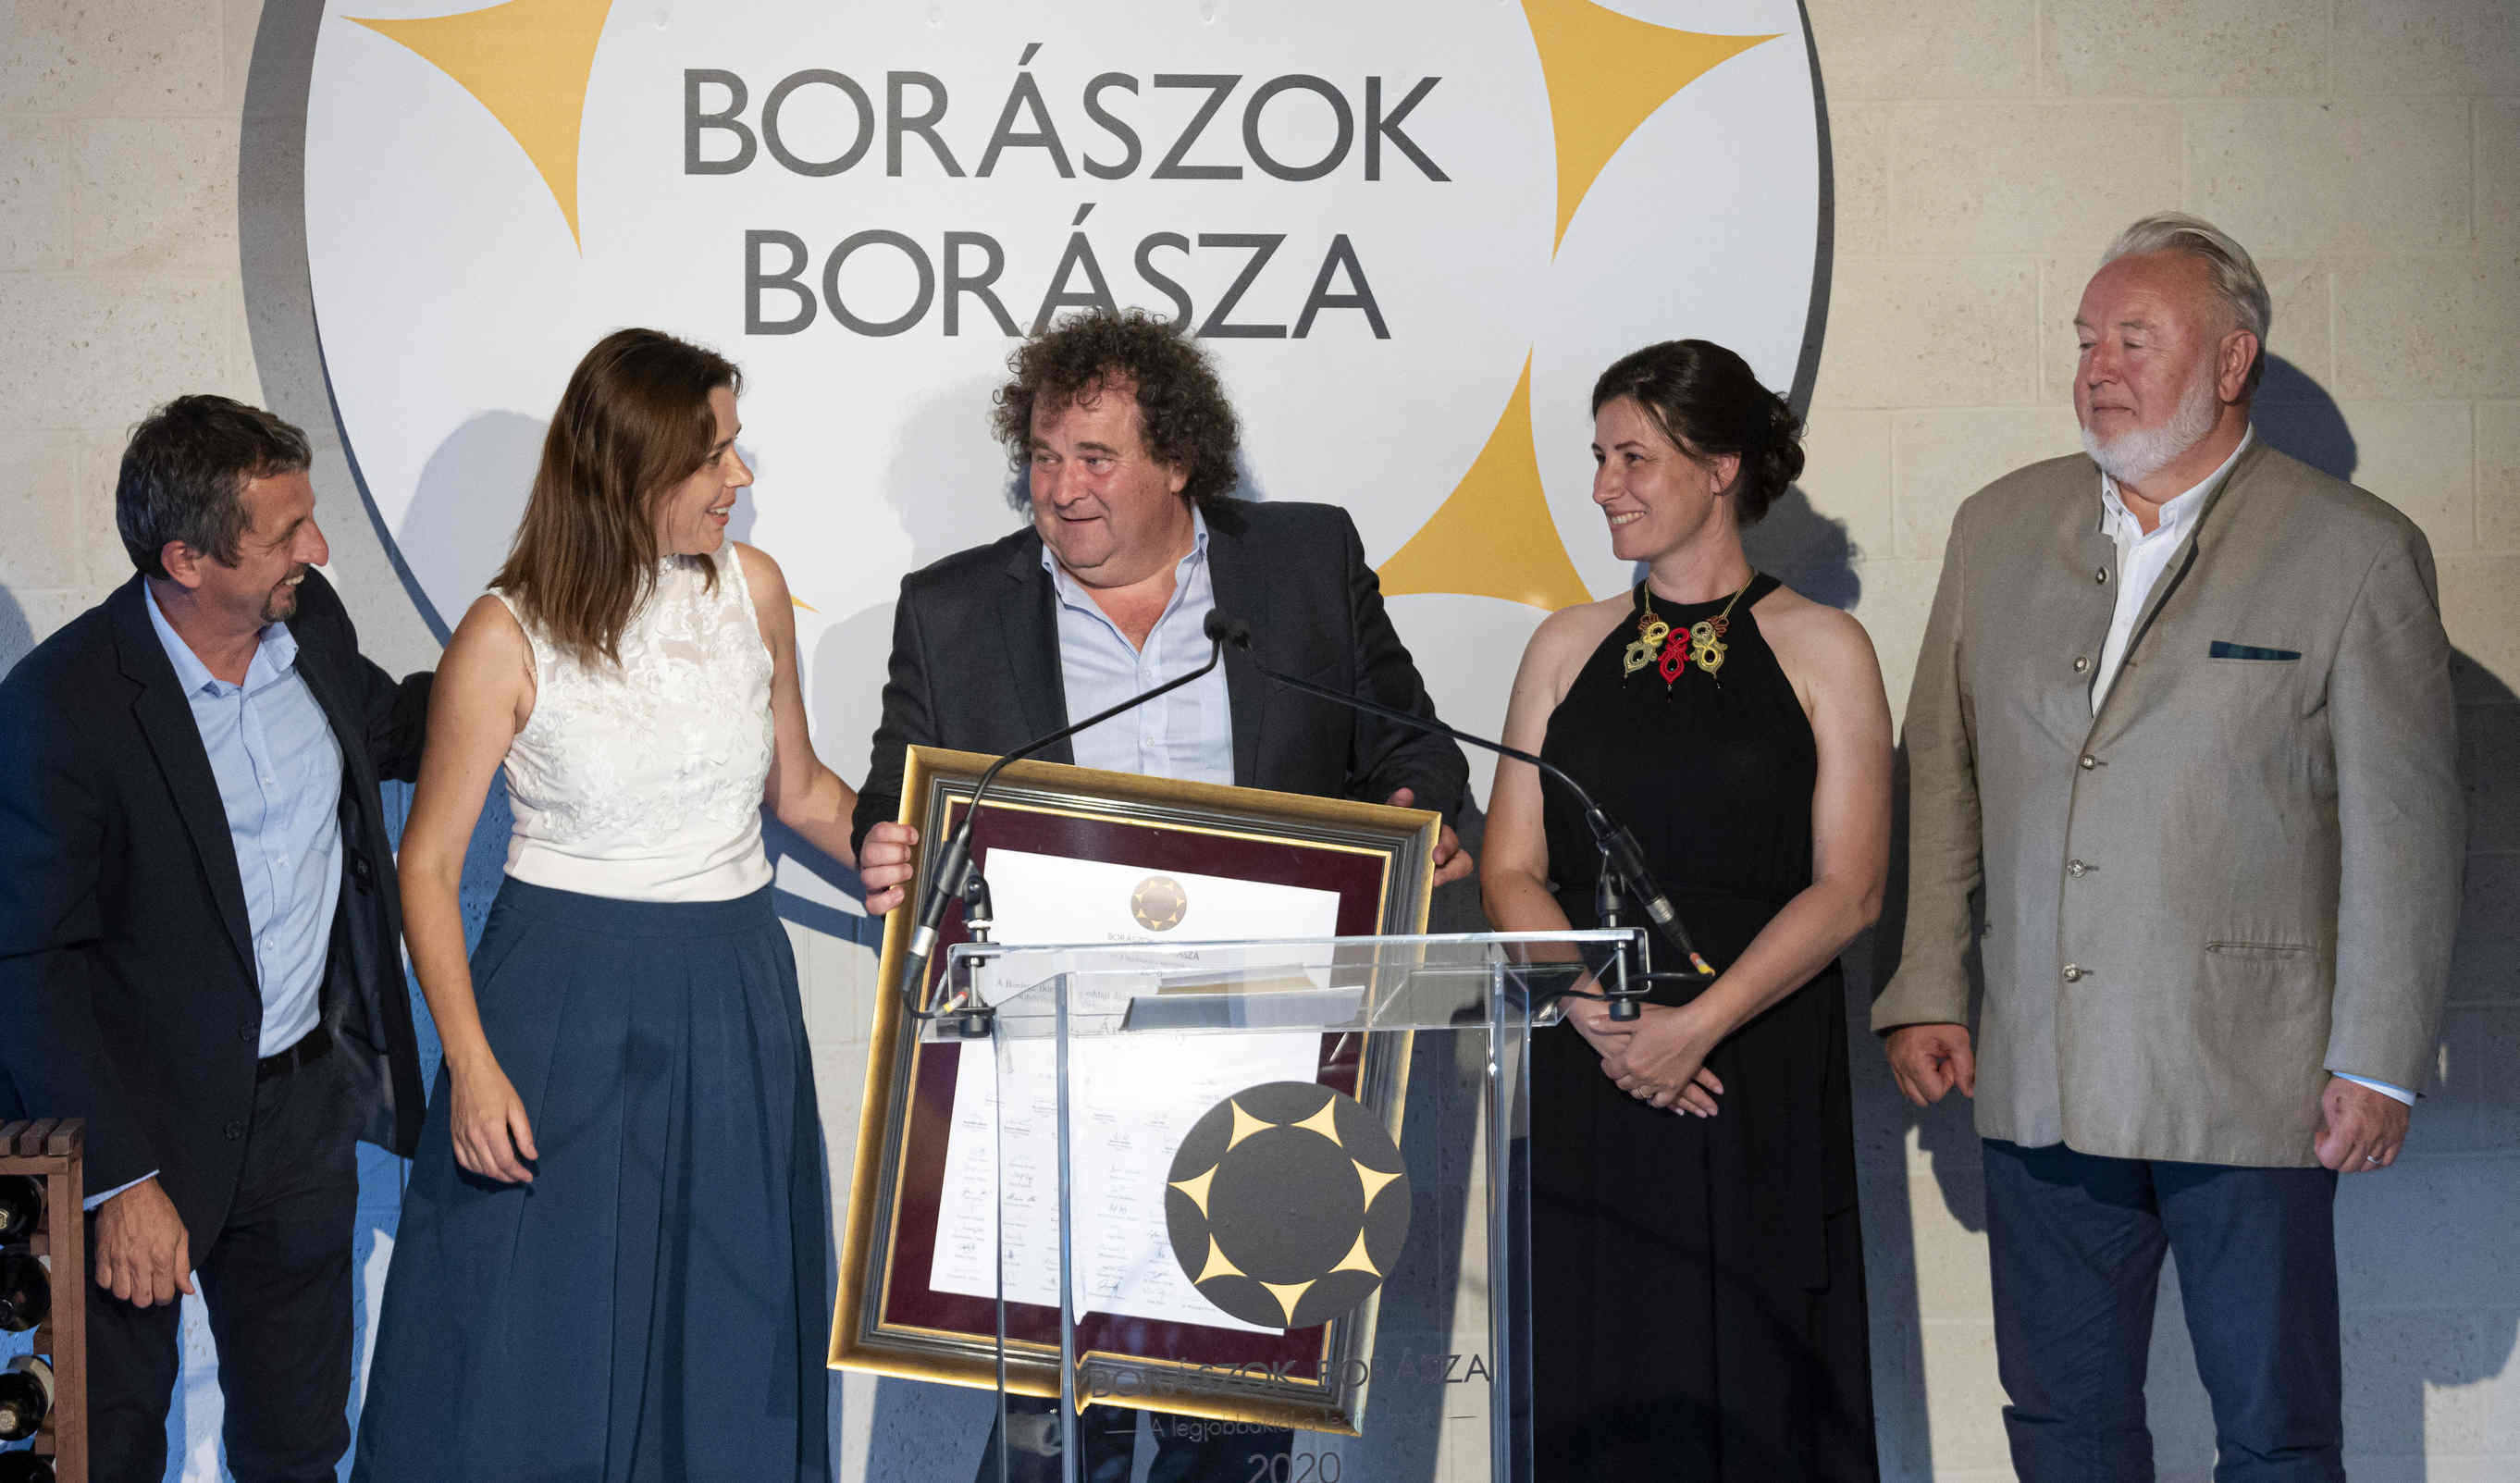 Borászok-borásza-2020-винодел-венгрия-top5